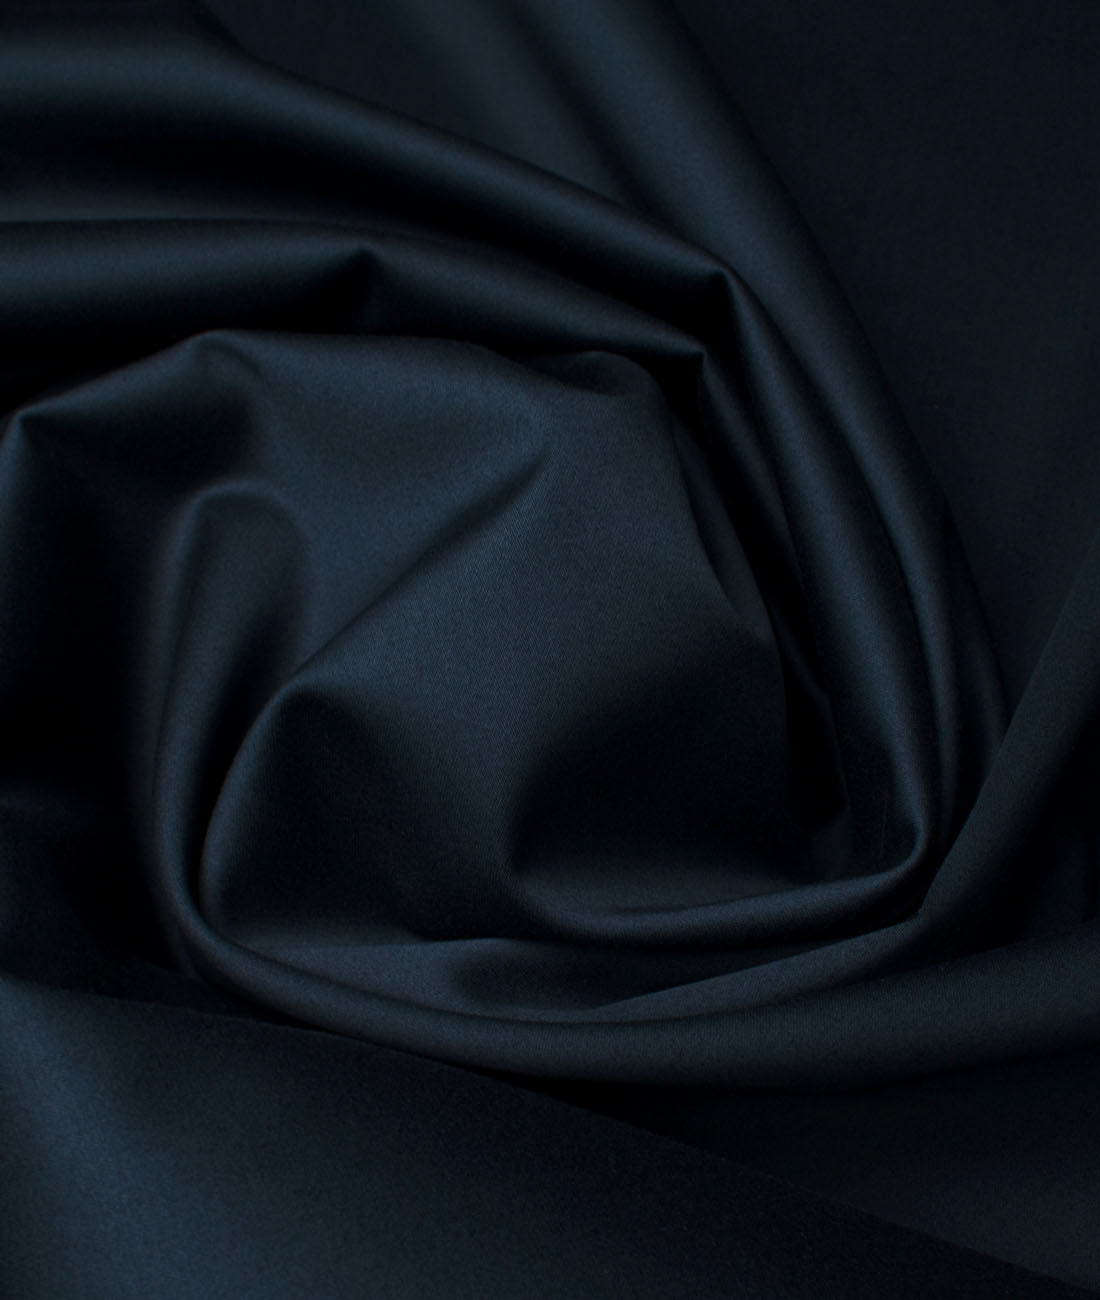 Arvind Tresca Men's Cotton Solids 1.50 Meter Unstitched Stretchable Cotton Trouser Fabric (Peacock Blue)